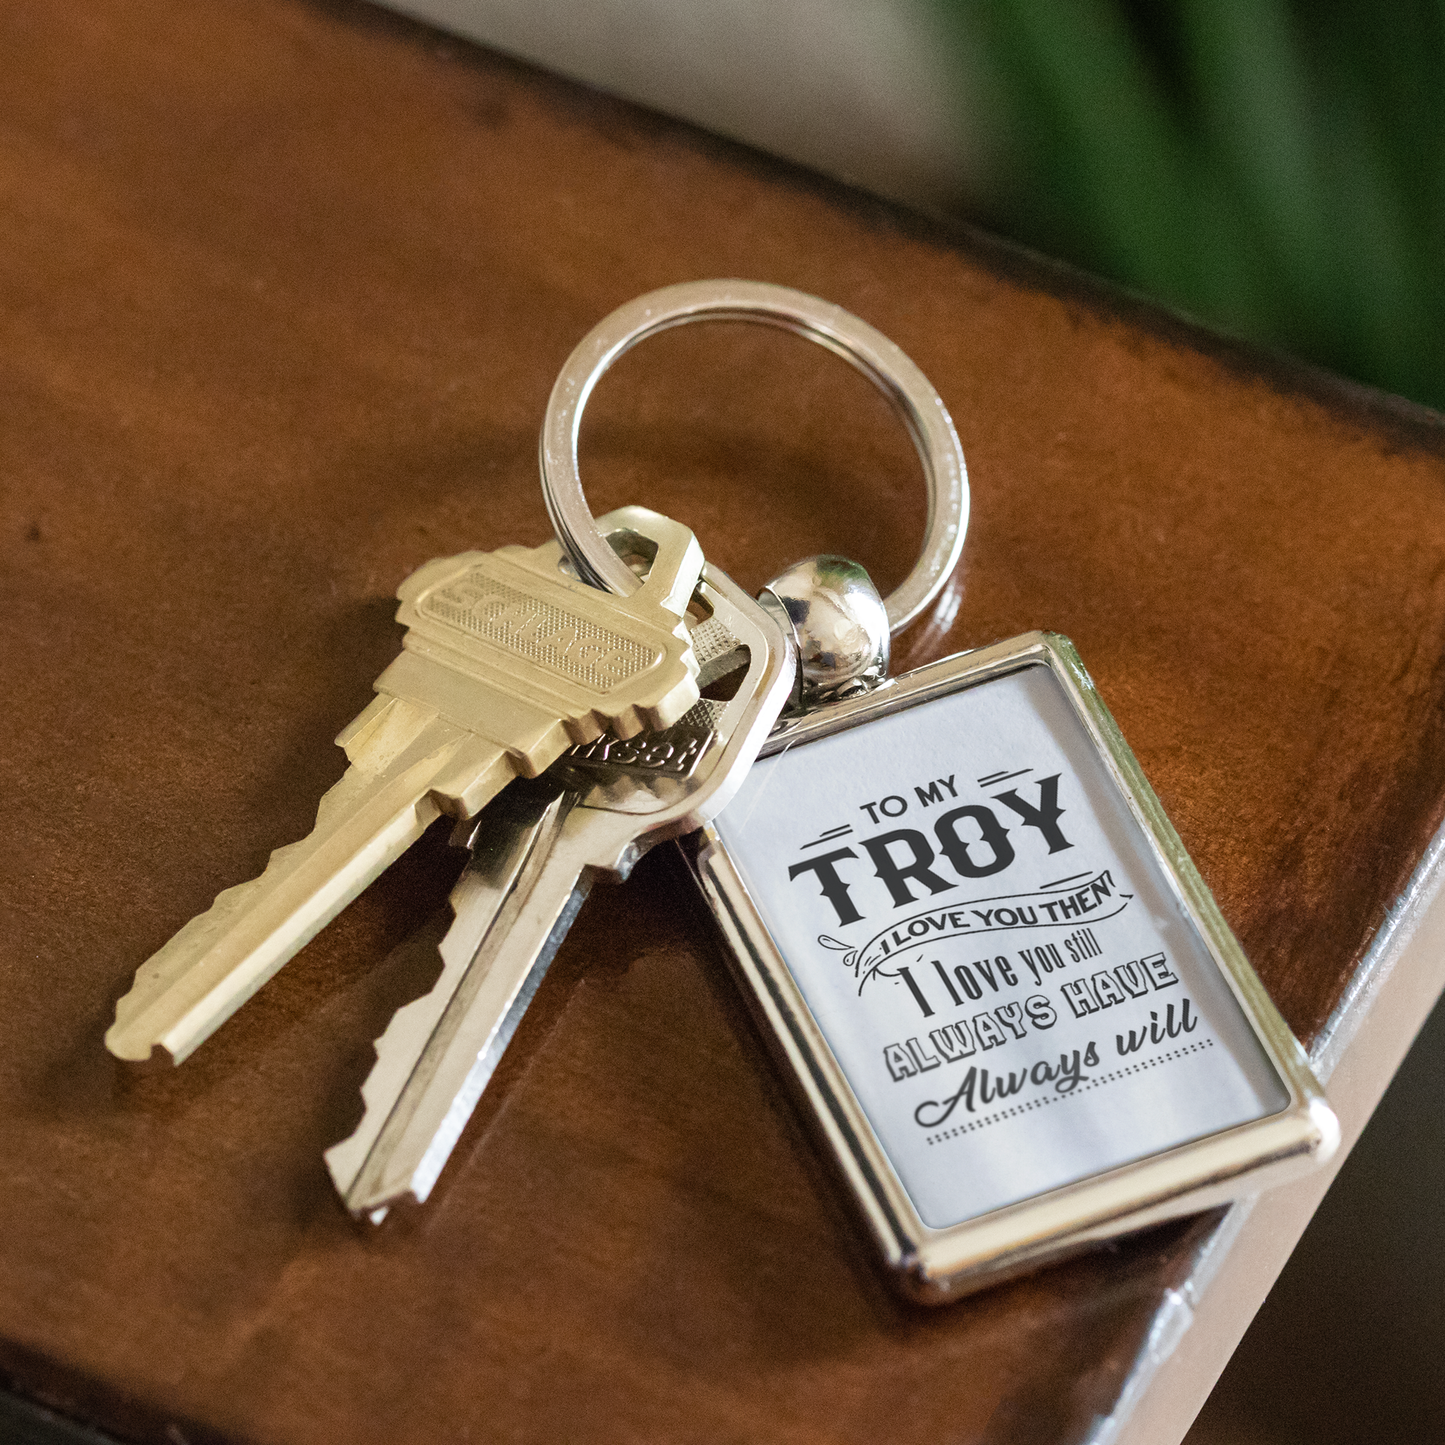 KC-21244809-sp-22305 - Keychain For Boyfriend With Name Troy - To My Troy I Love Yo